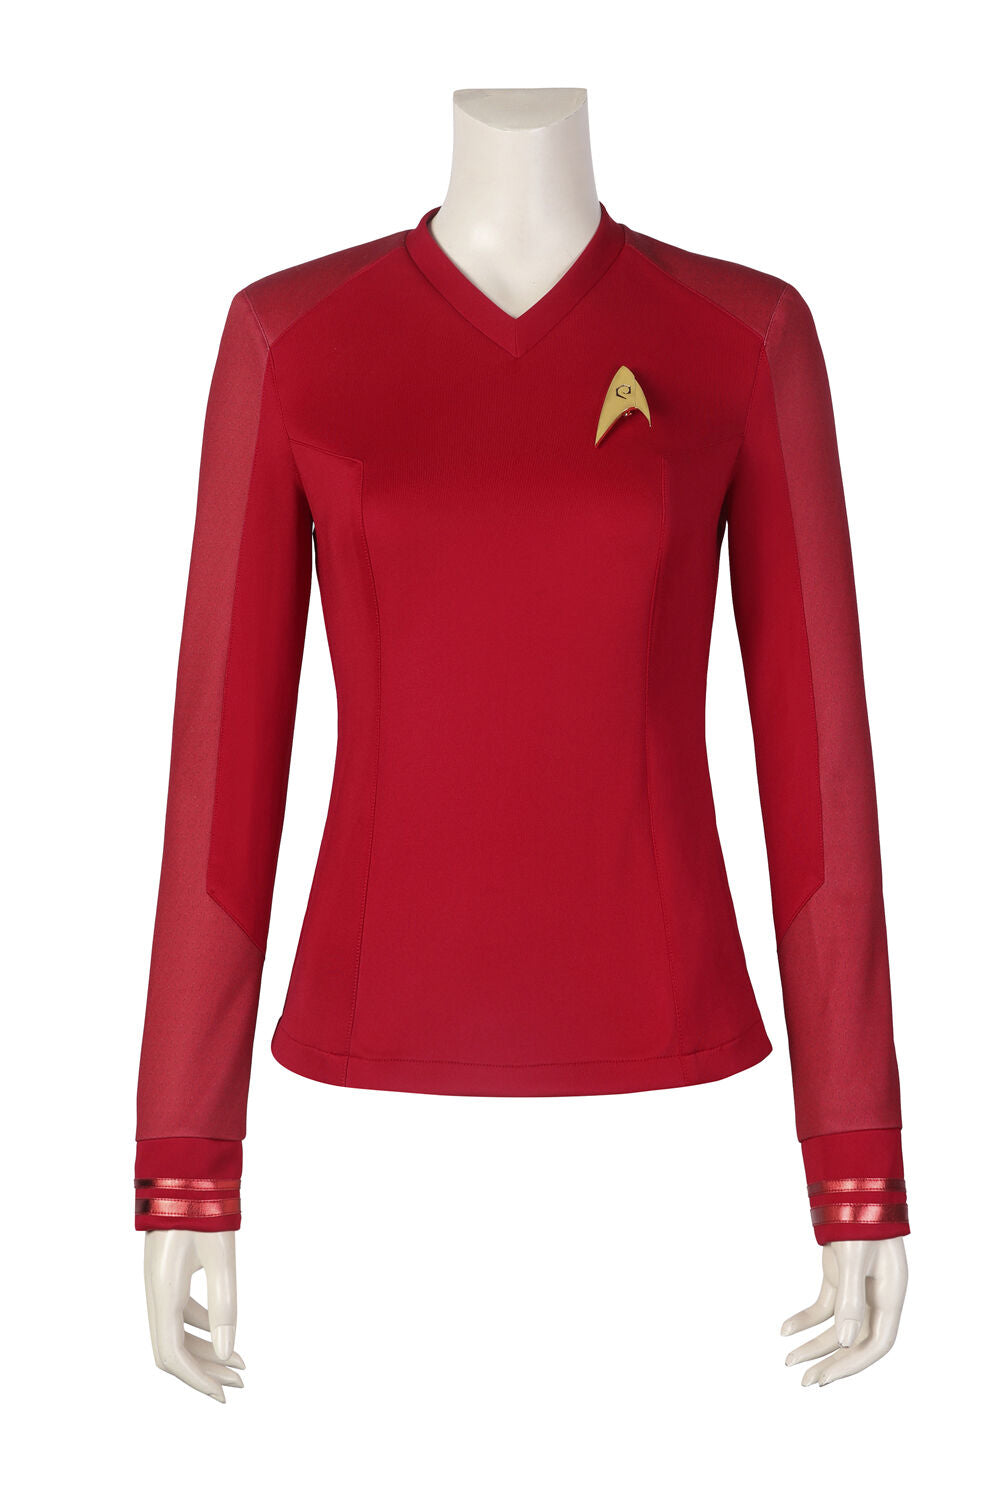 La'an Noonien Singh Uniform, Star Trek Cosplay Costume